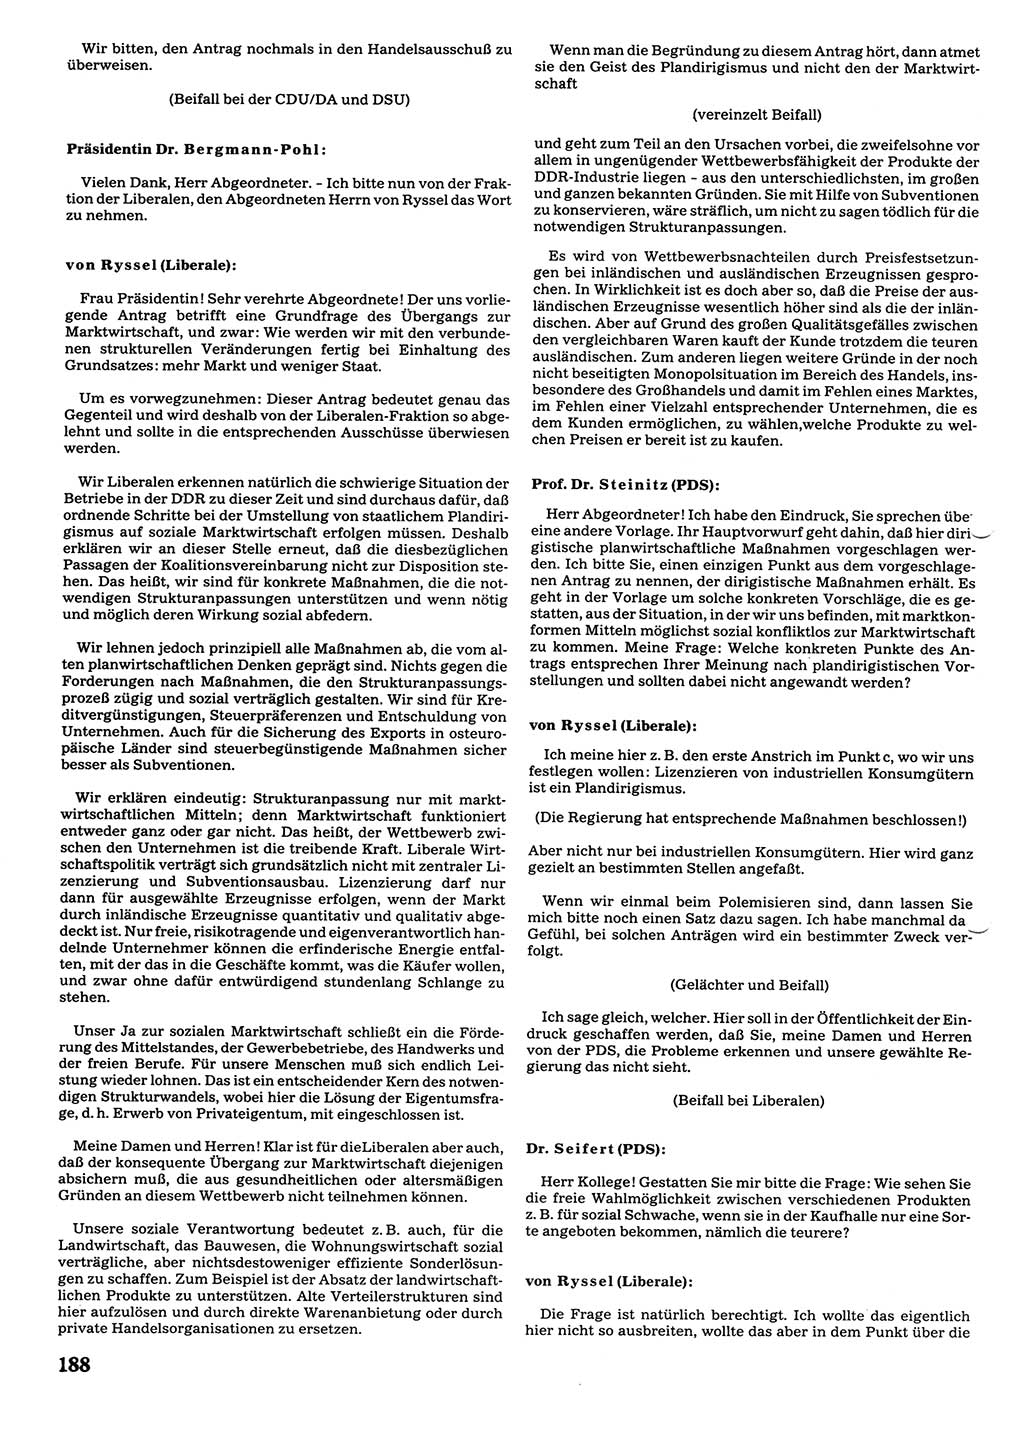 Tagungen der Volkskammer (VK) der Deutschen Demokratischen Republik (DDR), 10. Wahlperiode 1990, Seite 188 (VK. DDR 10. WP. 1990, Prot. Tg. 1-38, 5.4.-2.10.1990, S. 188)